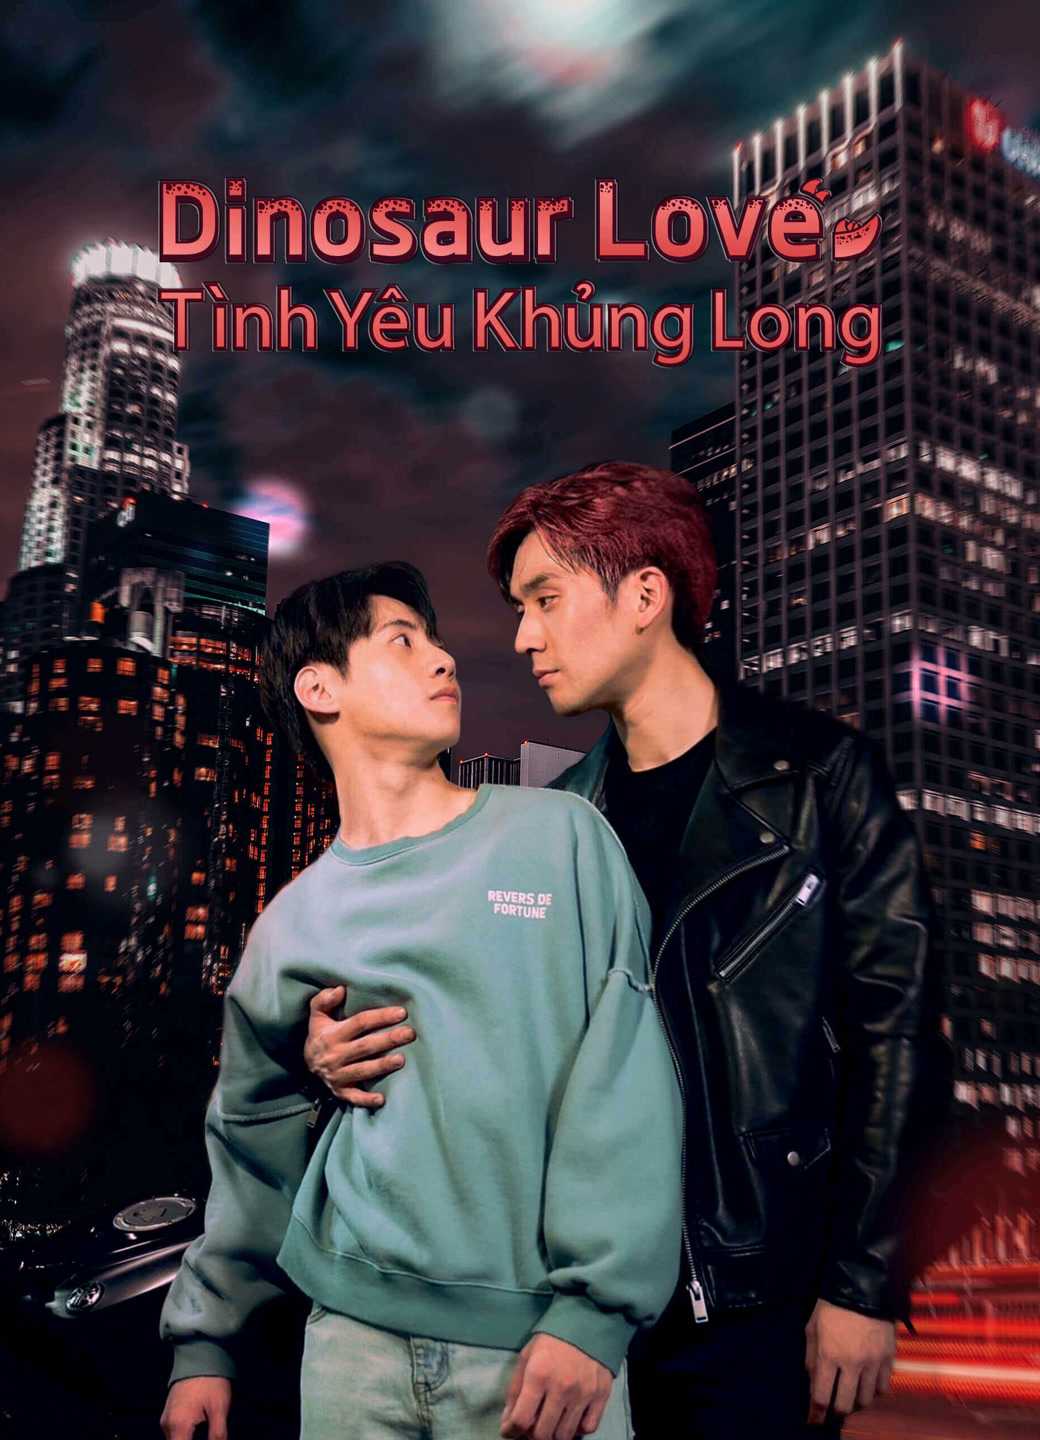 Dinosaur love: tình yêu khủng long - Dinosaur love